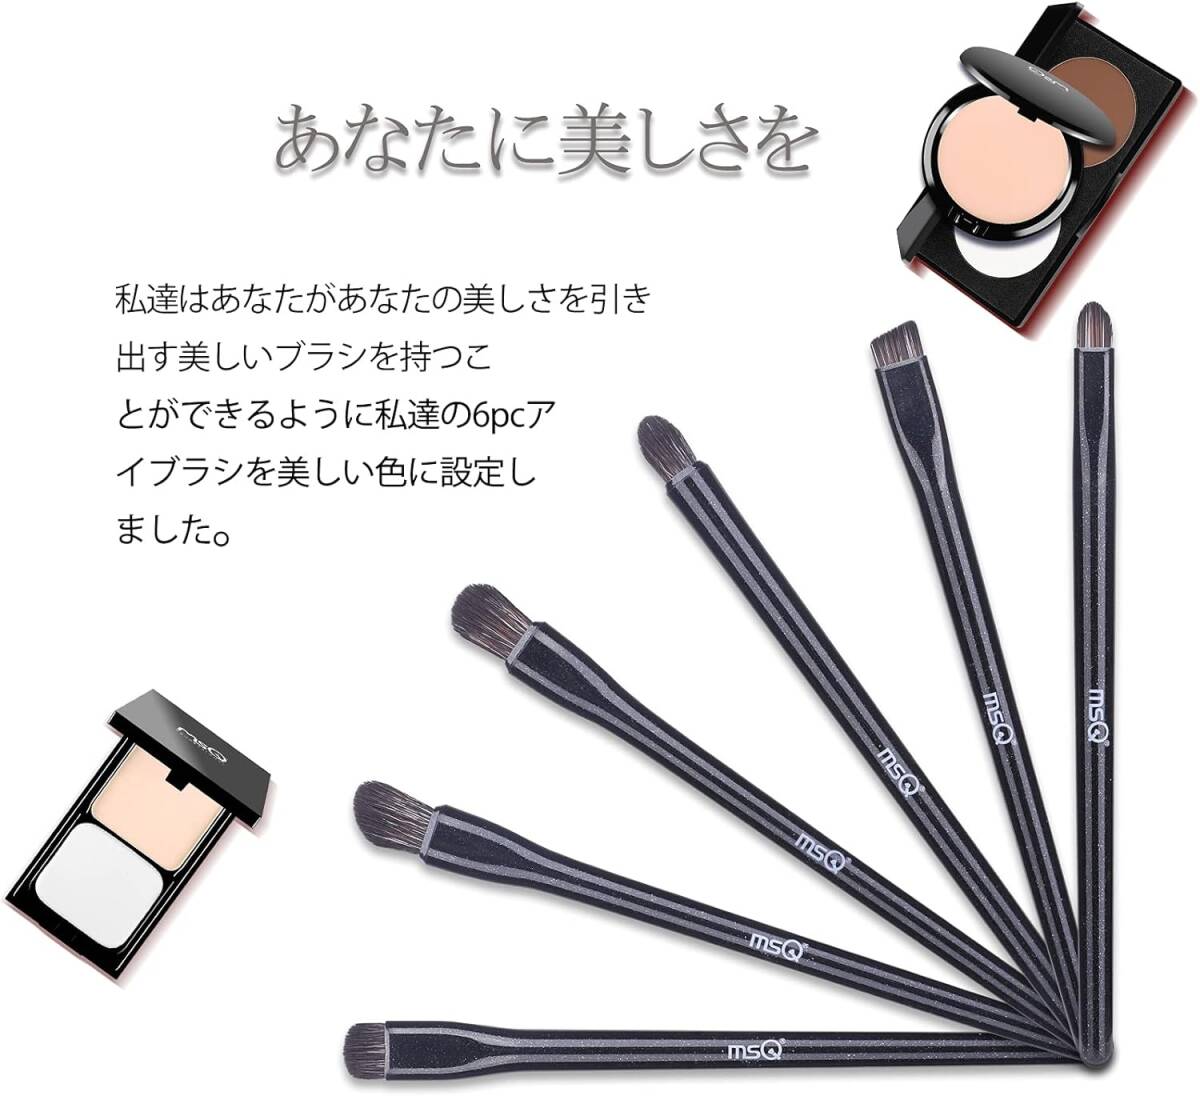 アイシャドウ ブラシ 6本 メイク 筆 高級繊維毛 超柔らかい 日常の化粧 携帯便利 敏感肌適用 (ブラック)の画像4